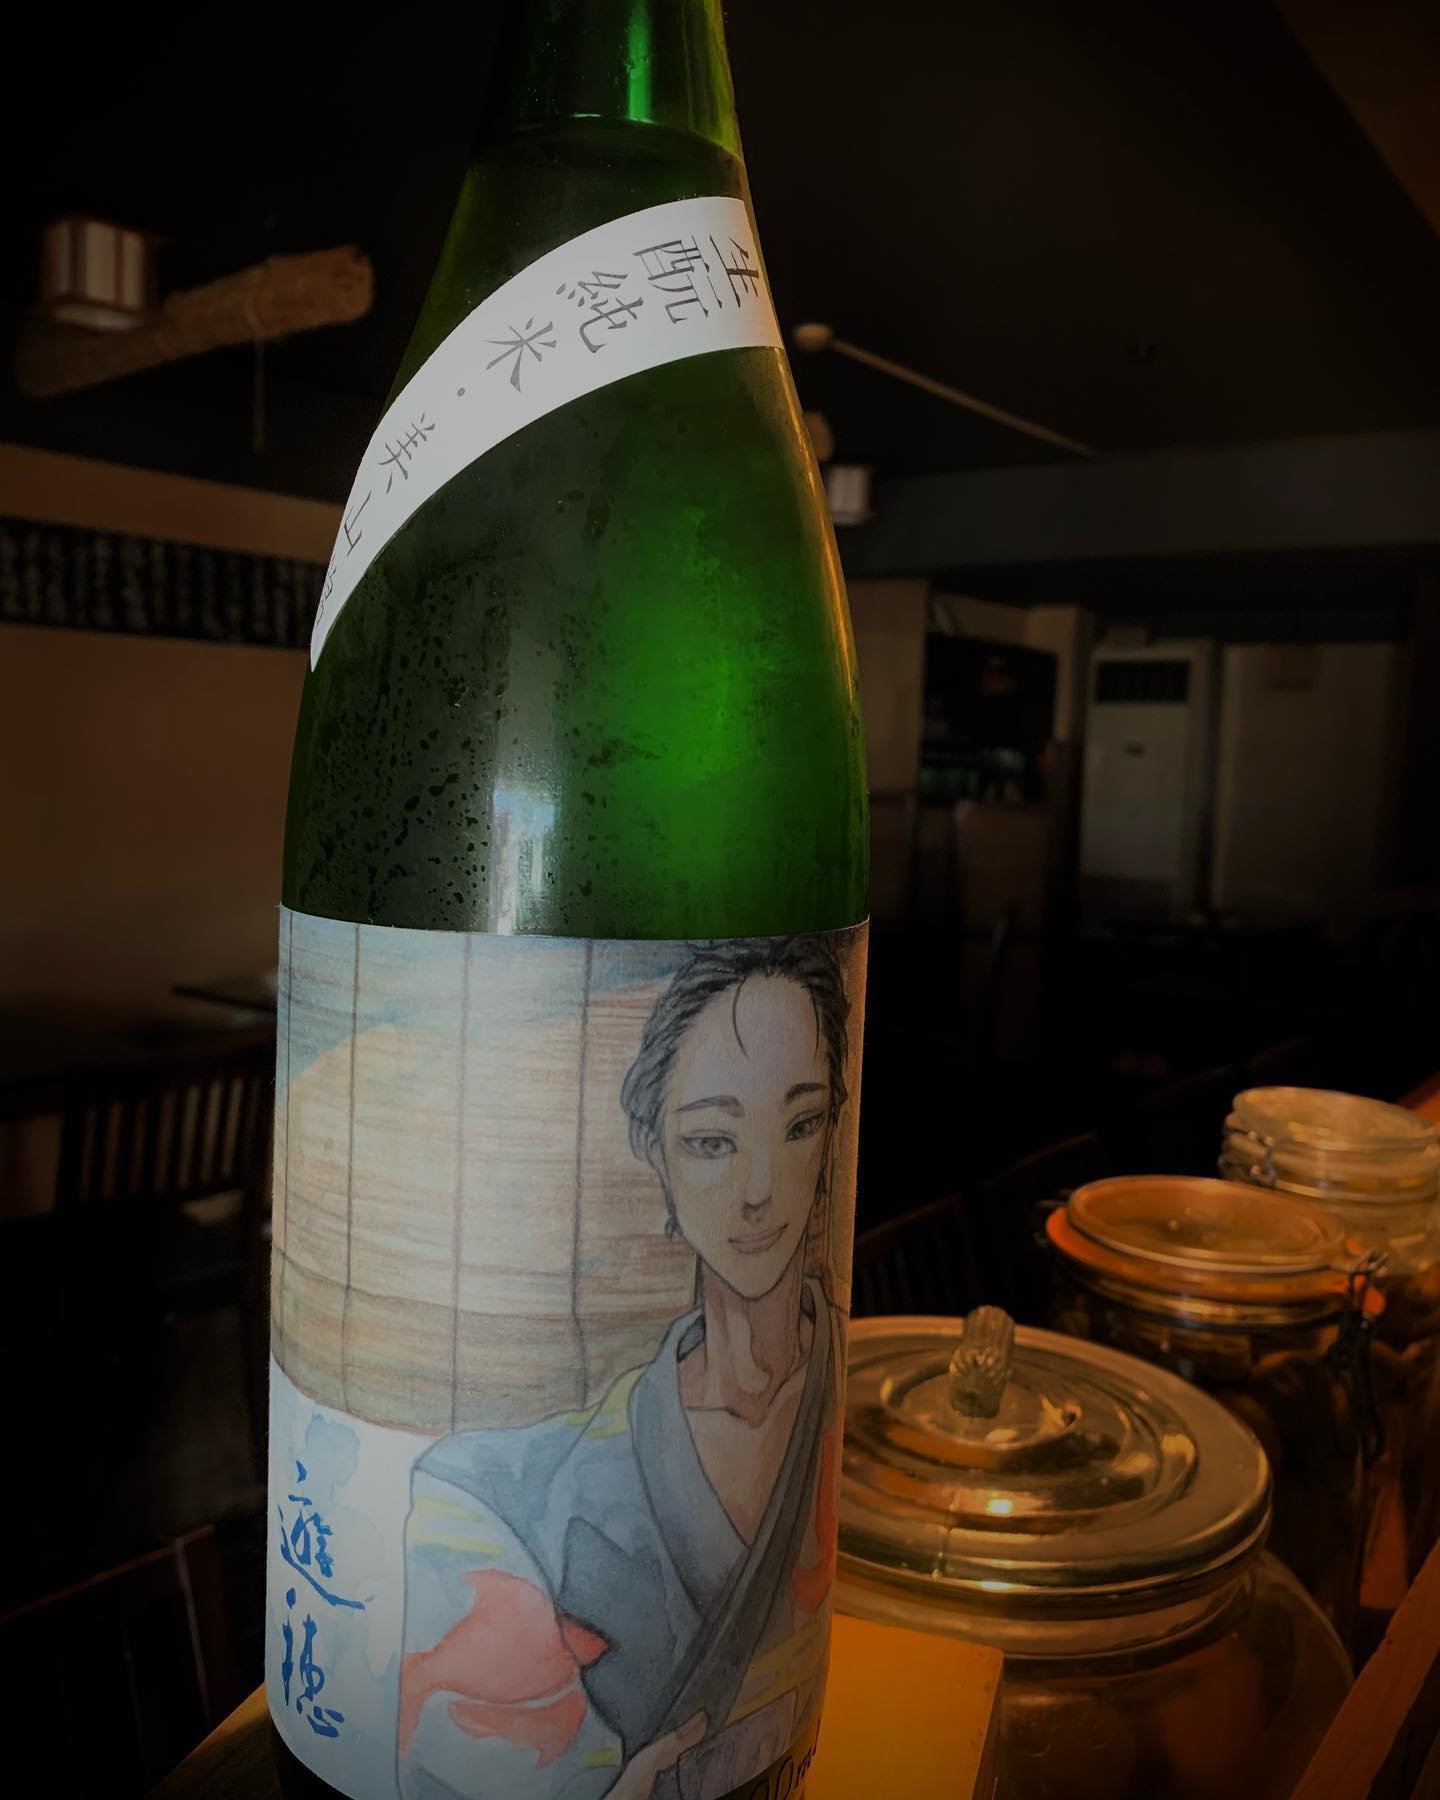 本日の日本酒紹介
｢遊穂｣
この日本酒は穏やかな香りで、すっきりとした酸が特徴。
開栓後は空気に触れることで酸が和らぎ、
少しずつ優しい味わいに変化。
一本をゆっくりじっくり楽しめます。
 #